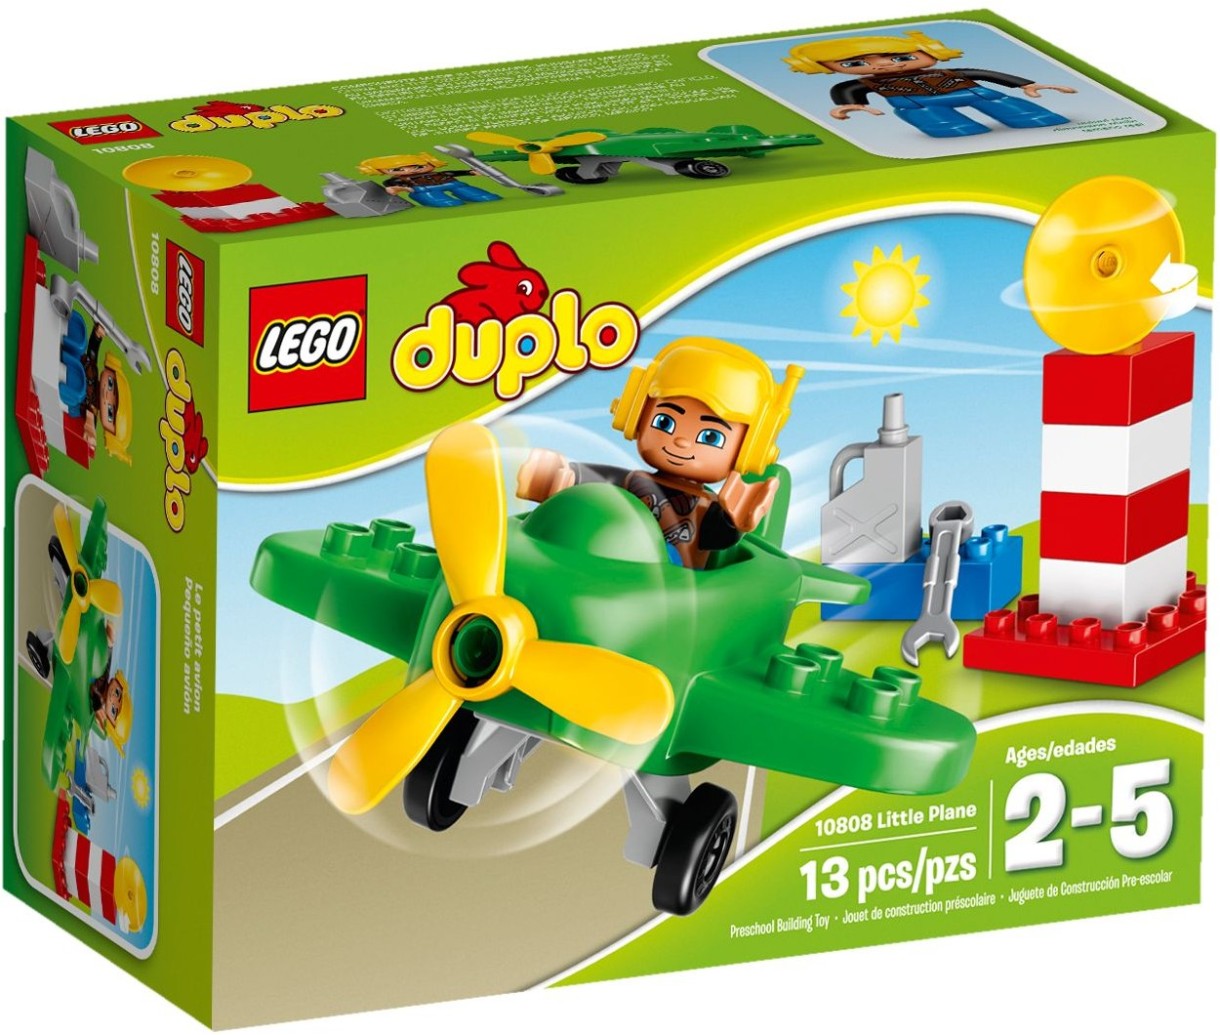 Set de construcție Lego Duplo: Little Plane (10808)